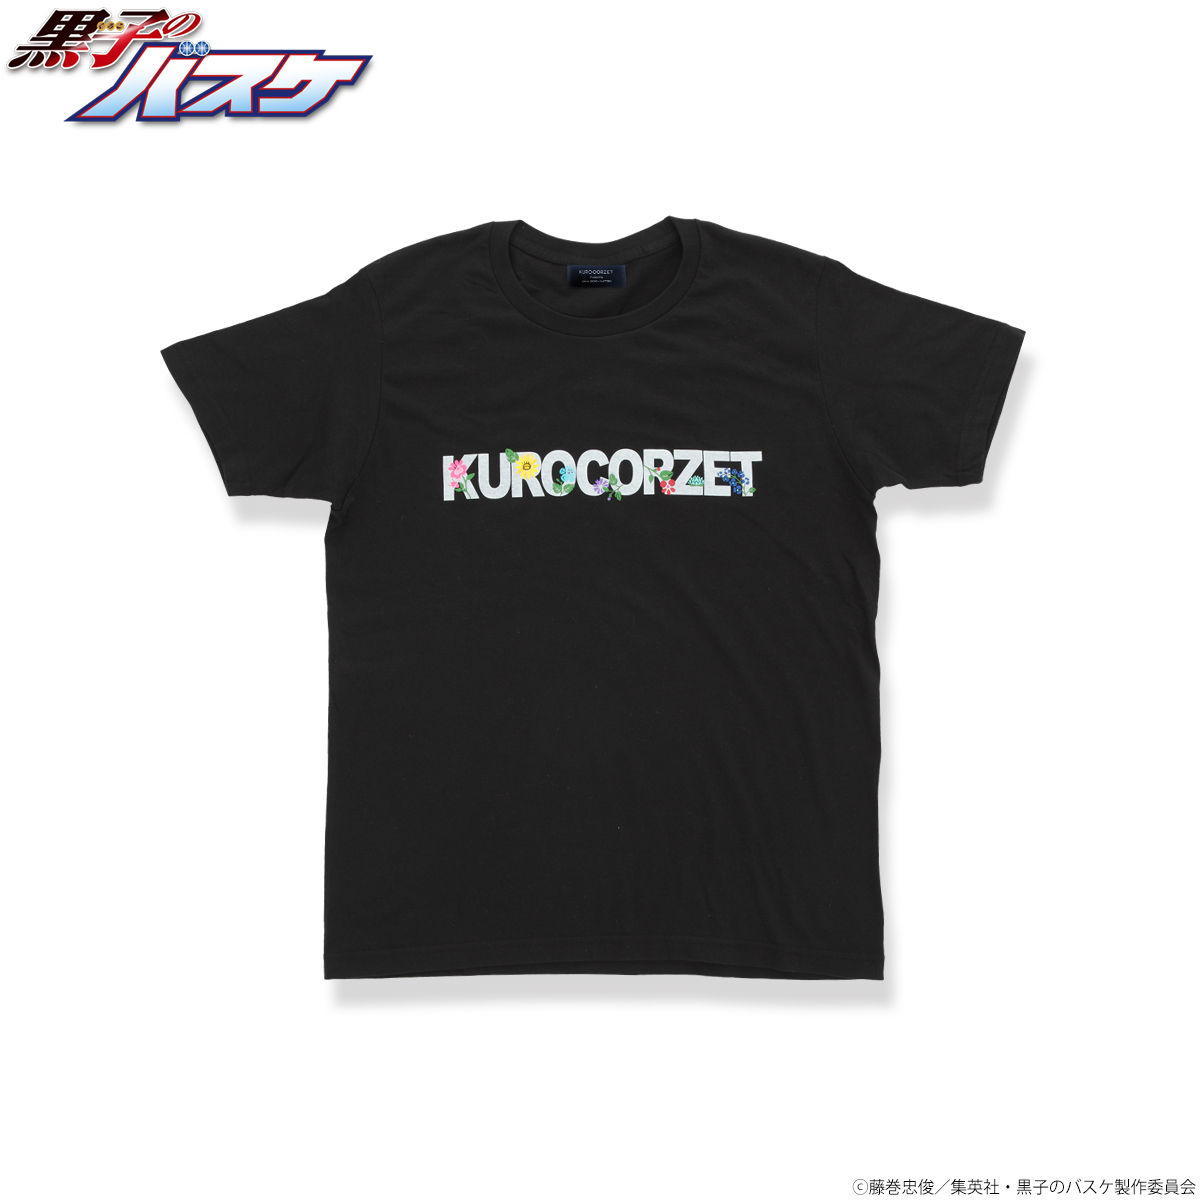 黒子のバスケ Kurocorzet 第一弾 Tシャツ 黒子のバスケ 趣味 コレクション プレミアムバンダイ公式通販